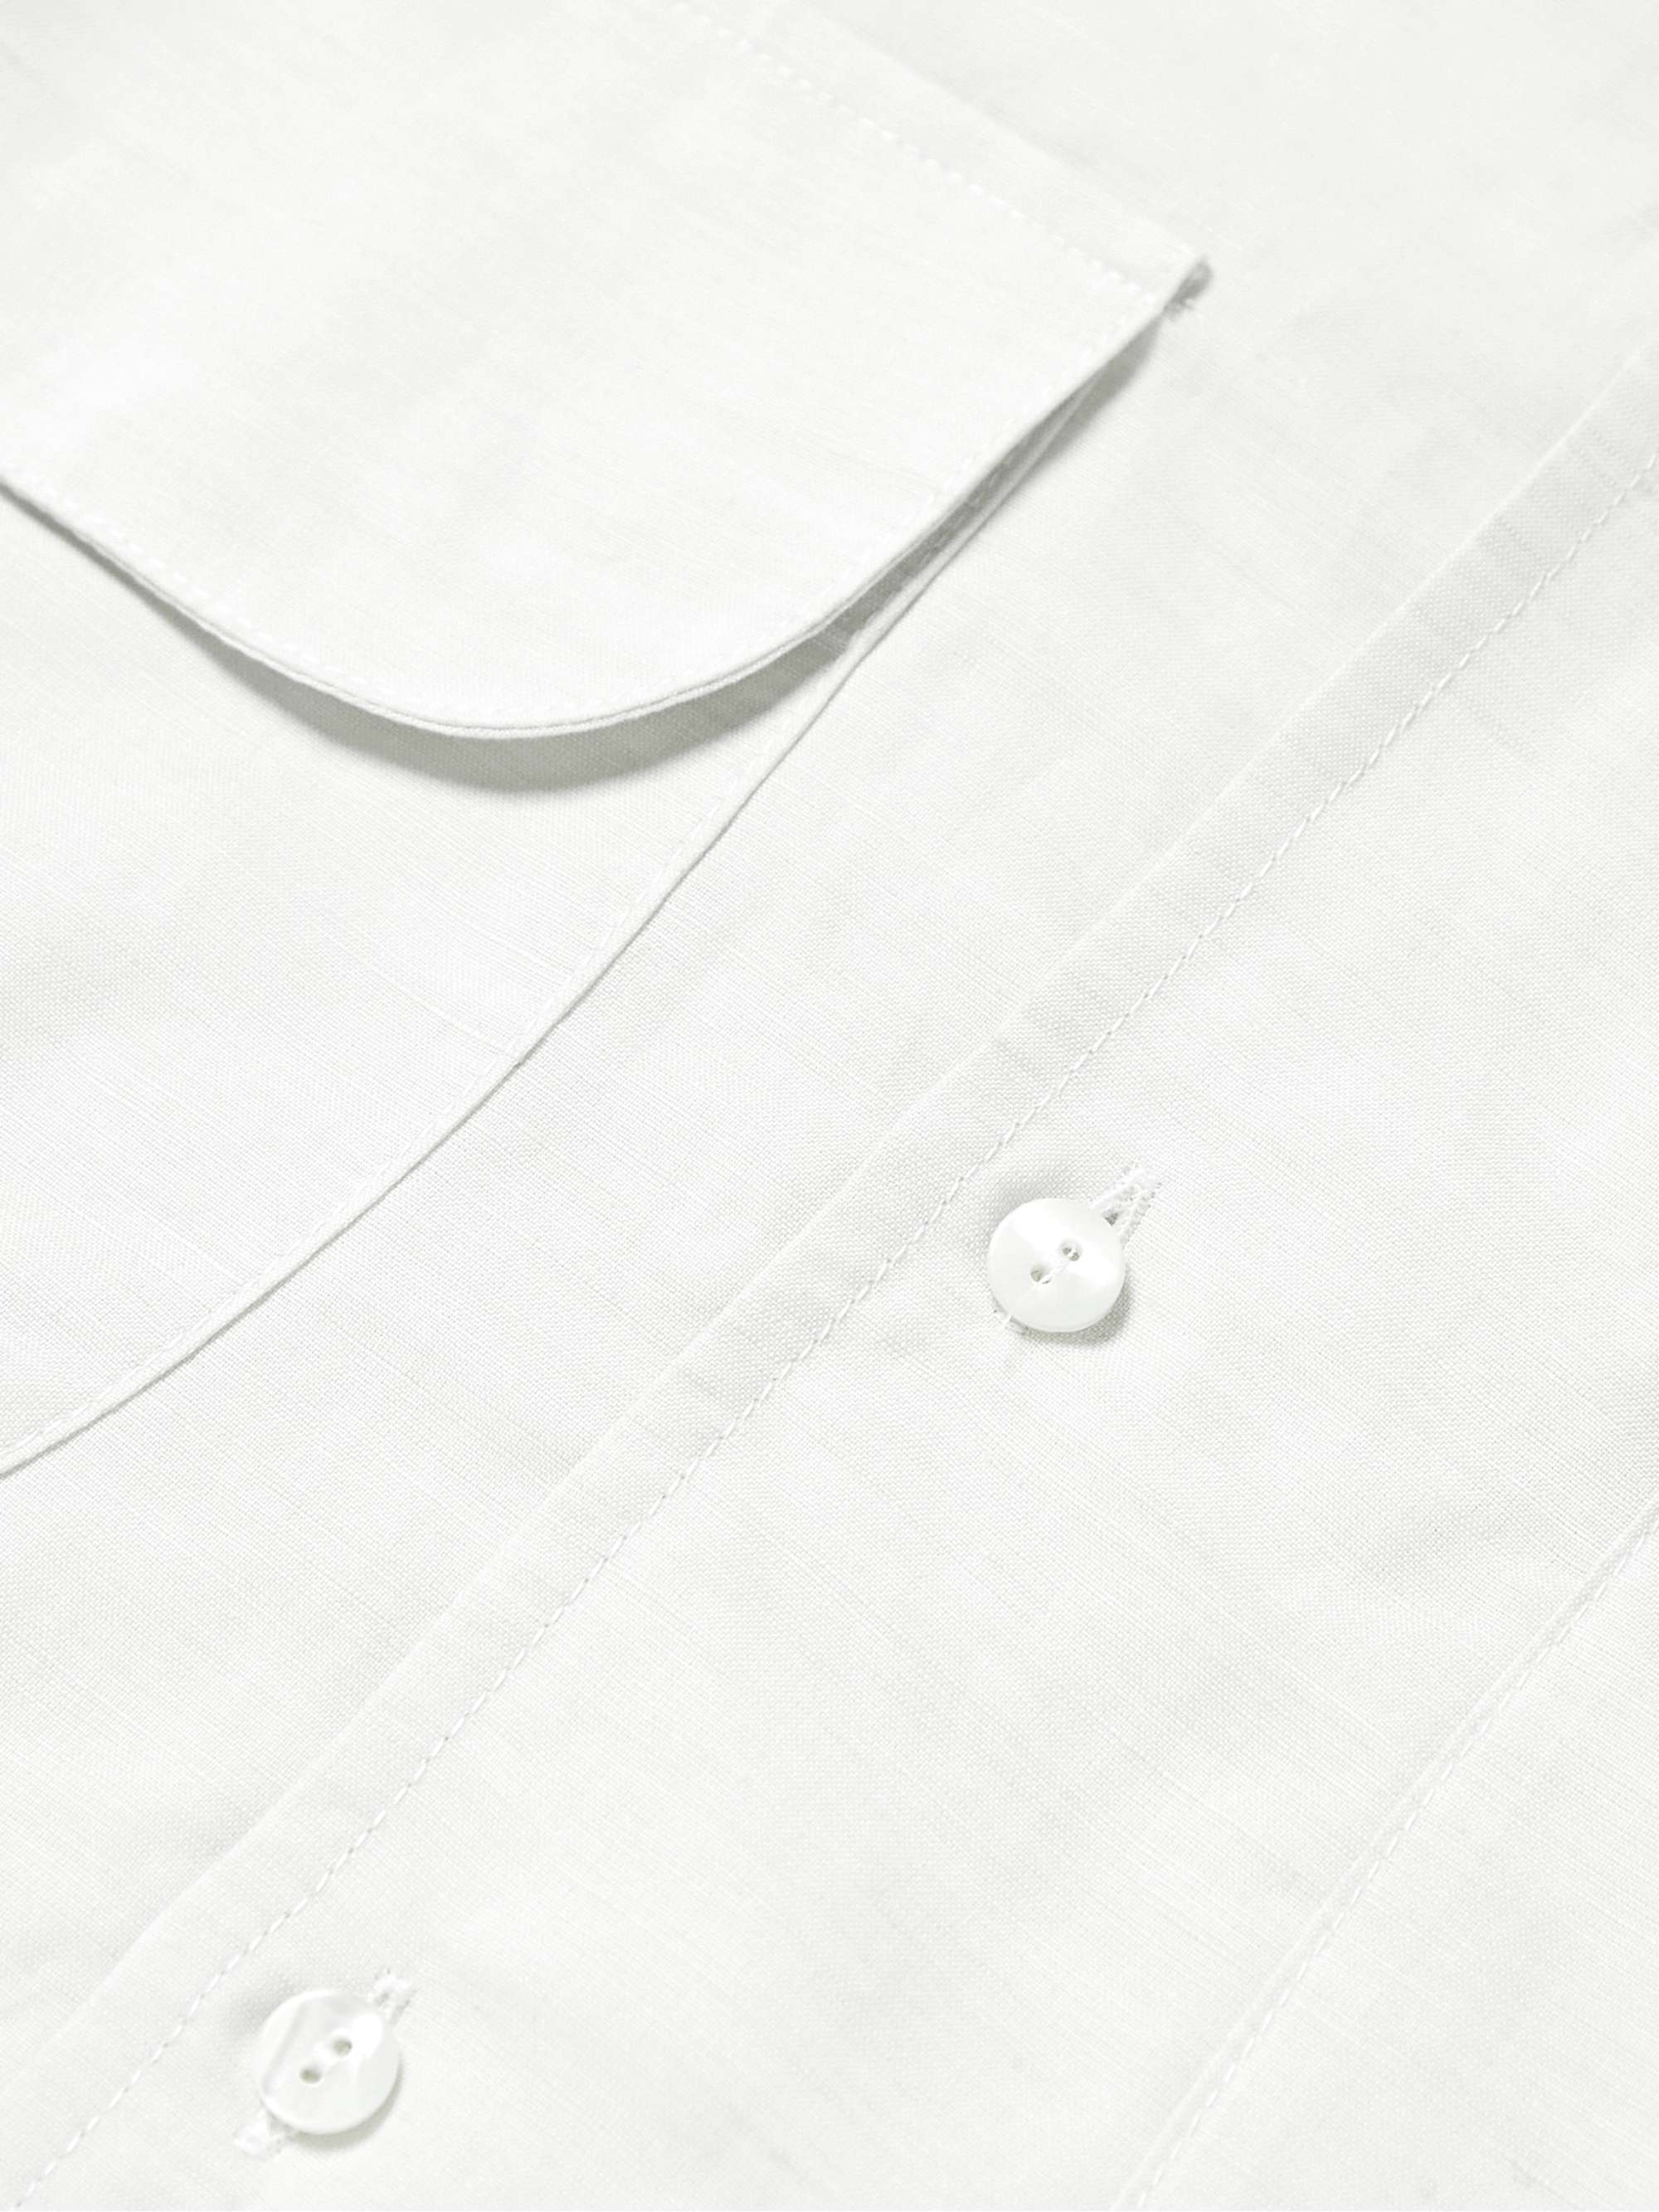 STÒFFA Camp-Collar Linen and Organic Cotton-Blend Shirt